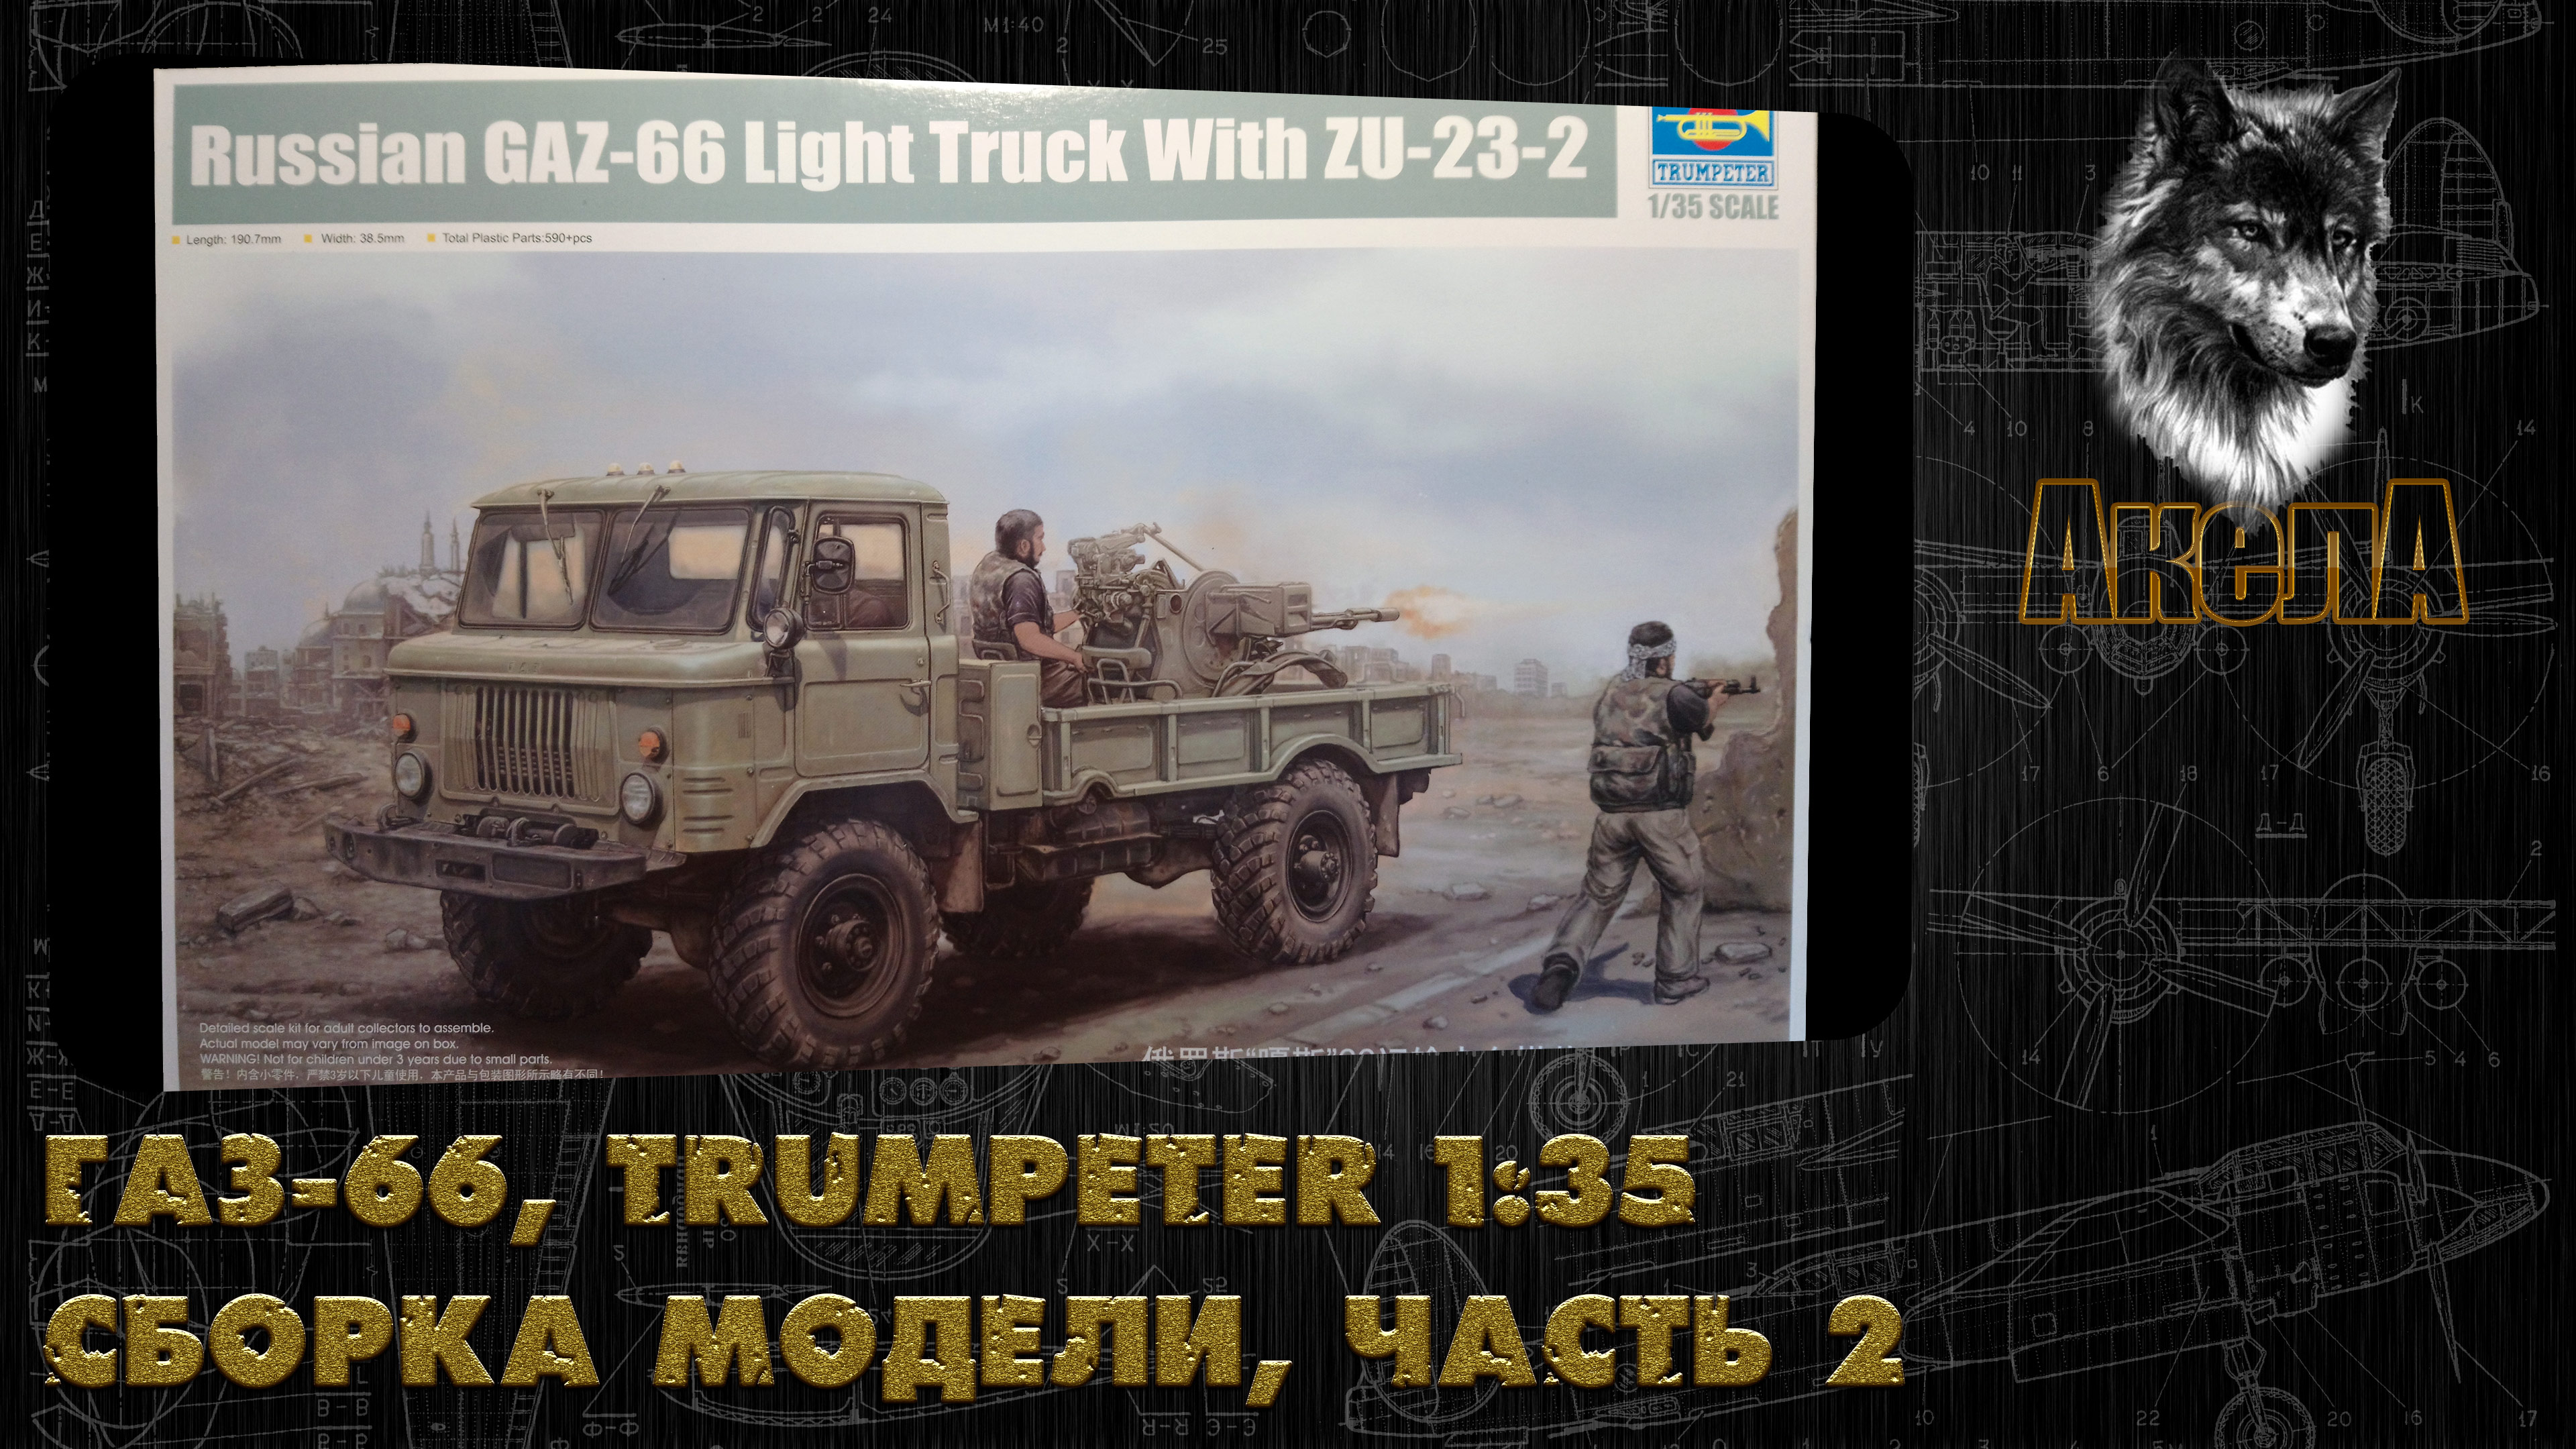 ГАЗ-66 с ЗУ-23-2, Trumpeter 1/35, сборка модели, часть 2